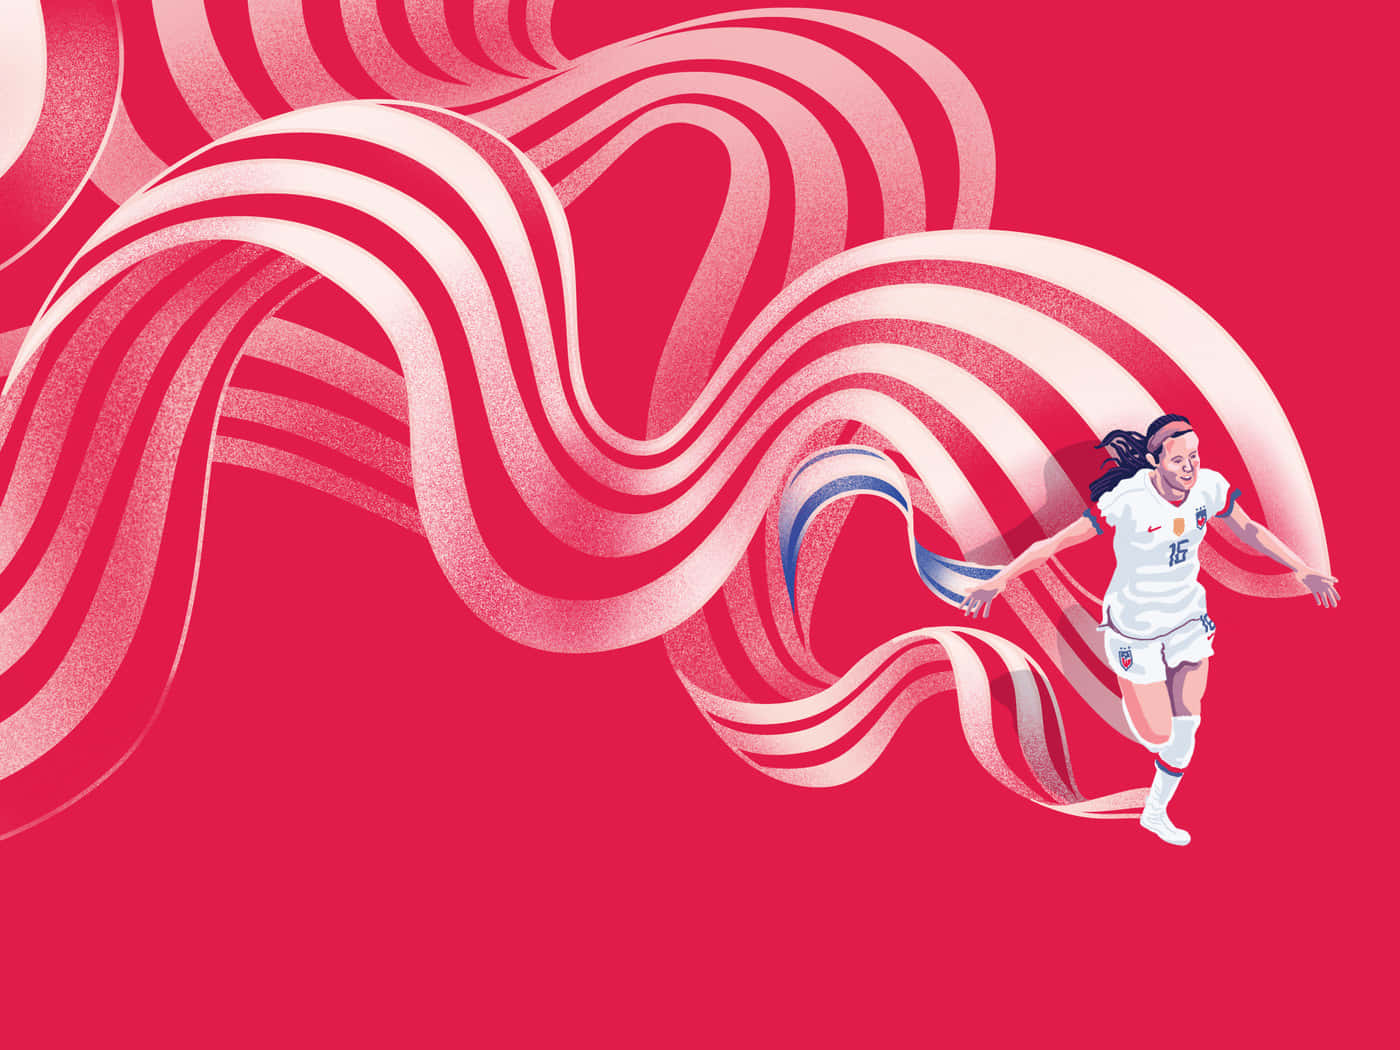 Rose Lavelle Soccer Dynamic Illustration Wallpaper